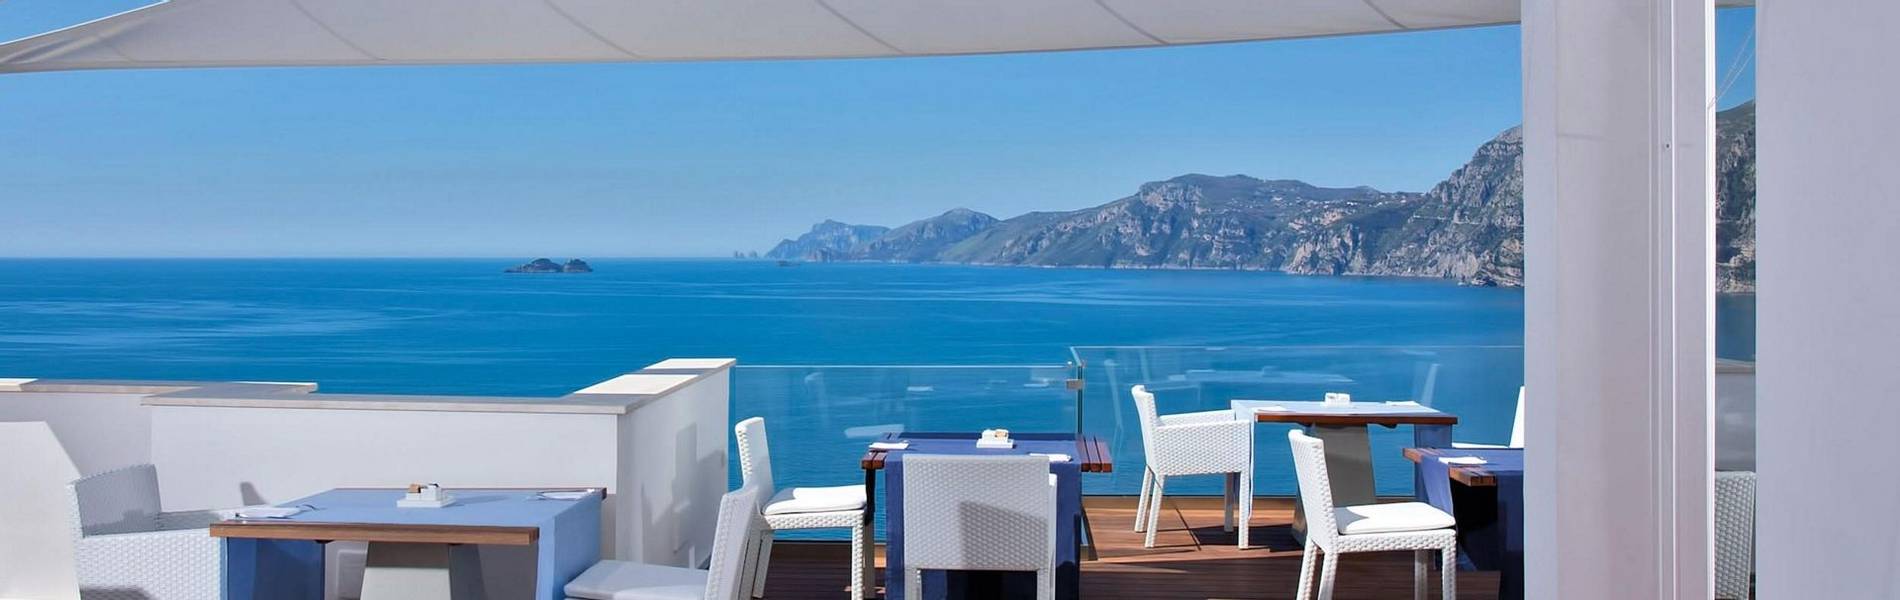 Casa Angelina, Amalfi Coast, Italy (68).jpg